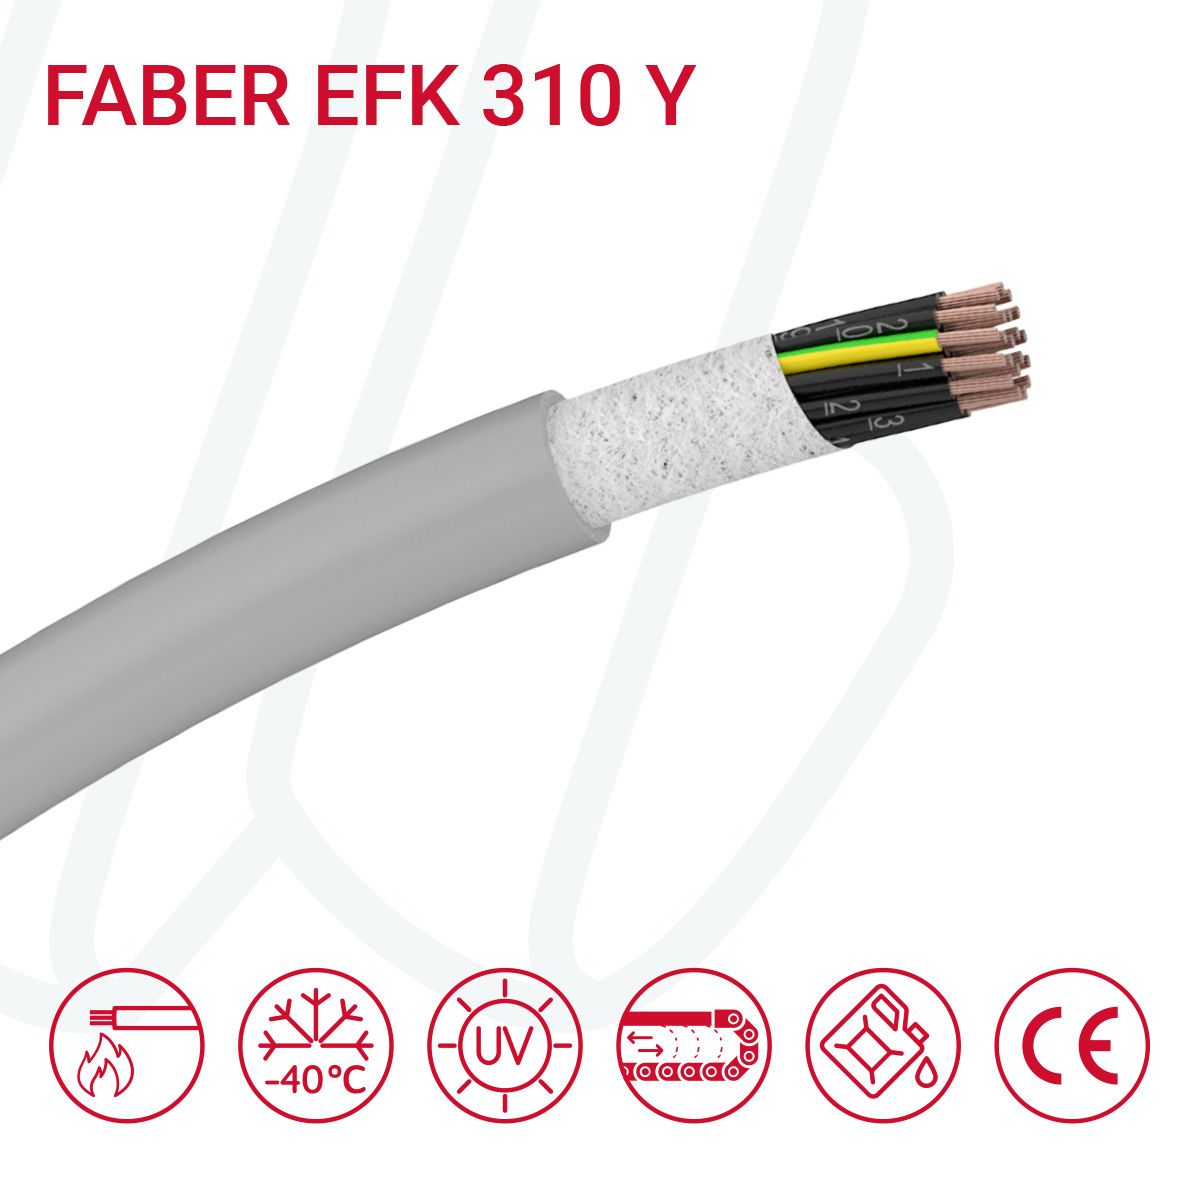 Кабель FABER EFK 310 Y 12G1.5 cUL сірий, 12, 1.5